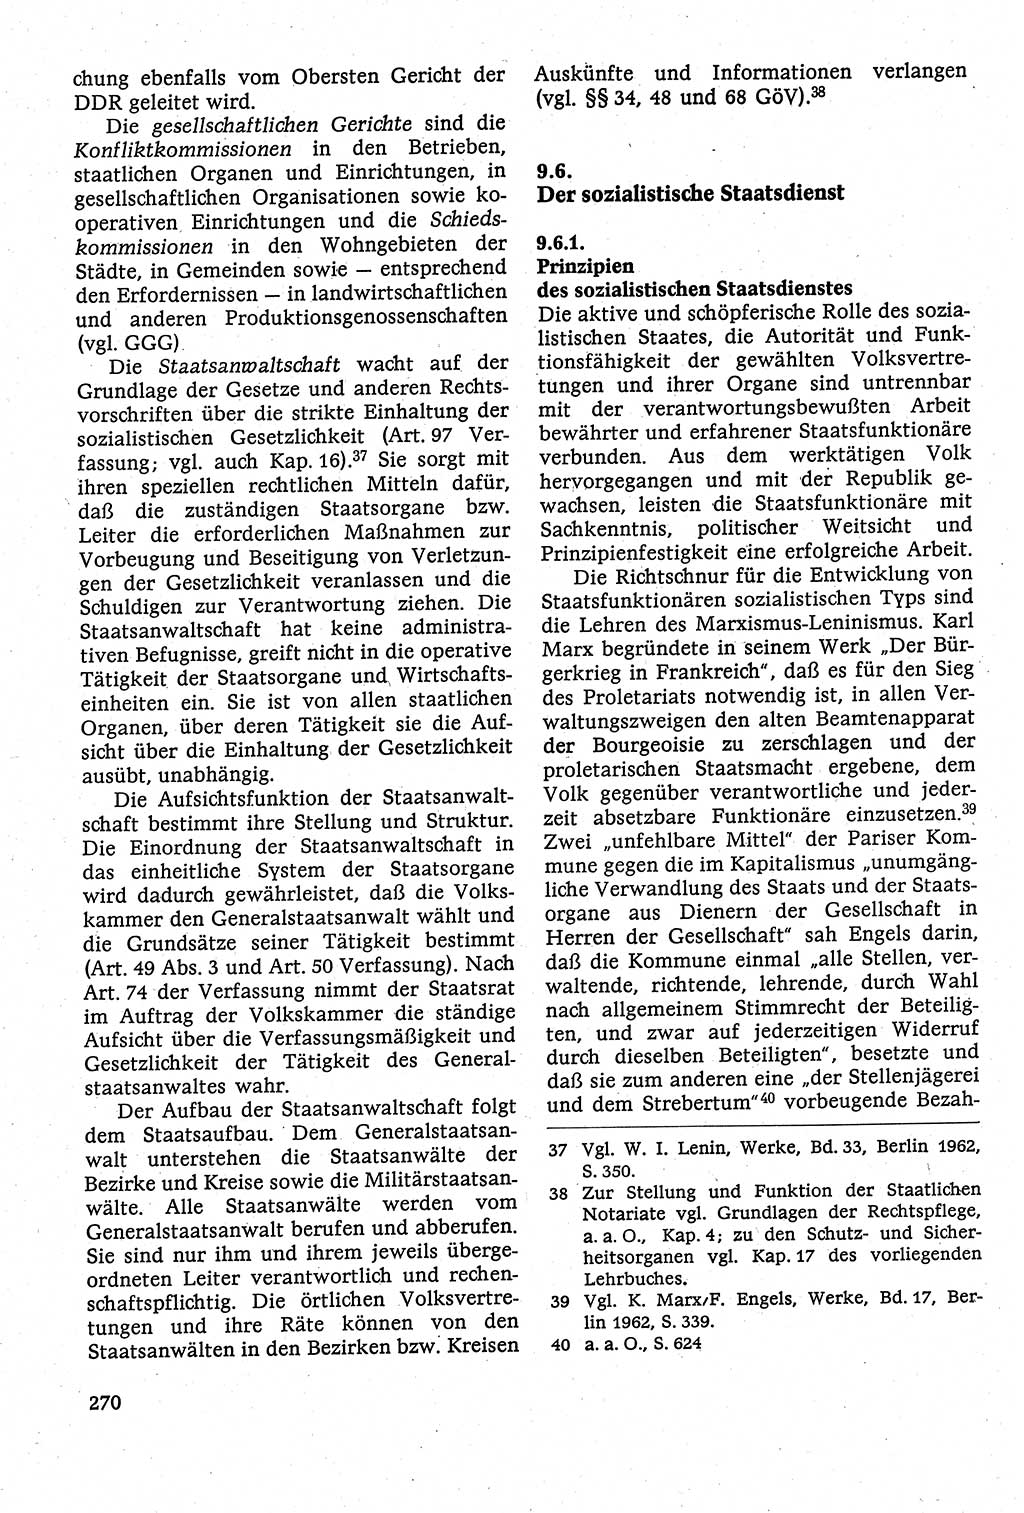 Staatsrecht der DDR [Deutsche Demokratische Republik (DDR)], Lehrbuch 1984, Seite 270 (St.-R. DDR Lb. 1984, S. 270)